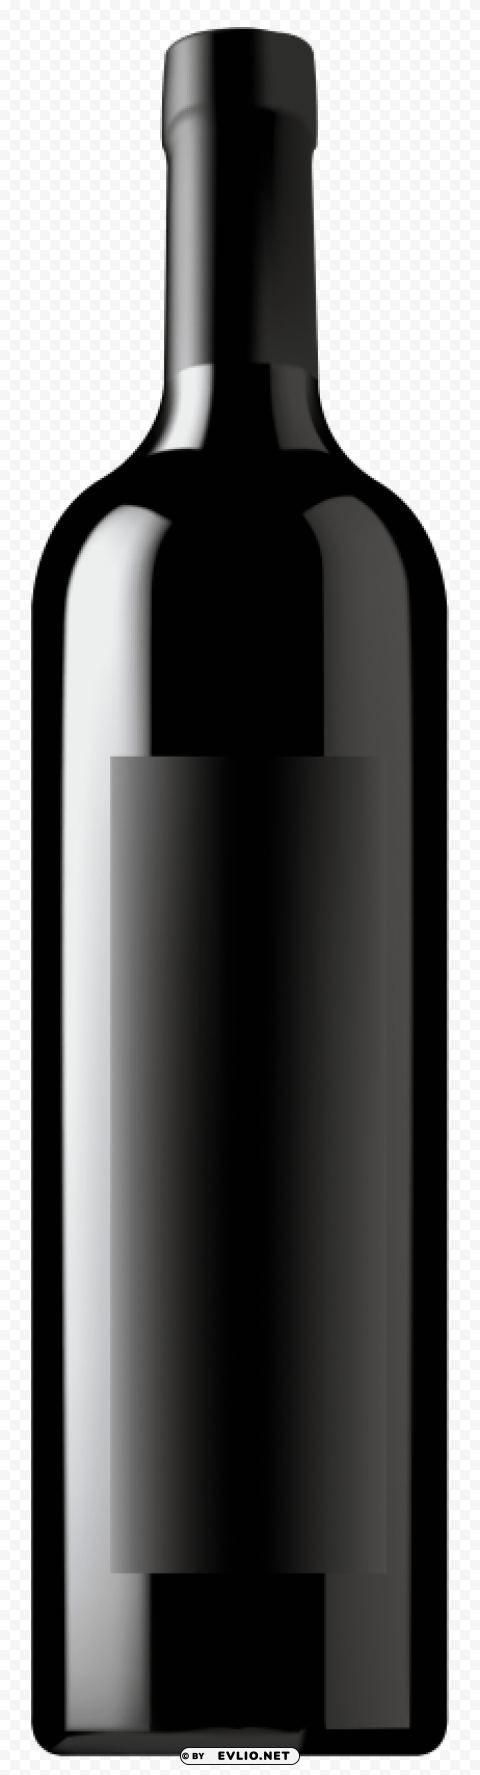 wine bottle black image PNG transparent icons for web design